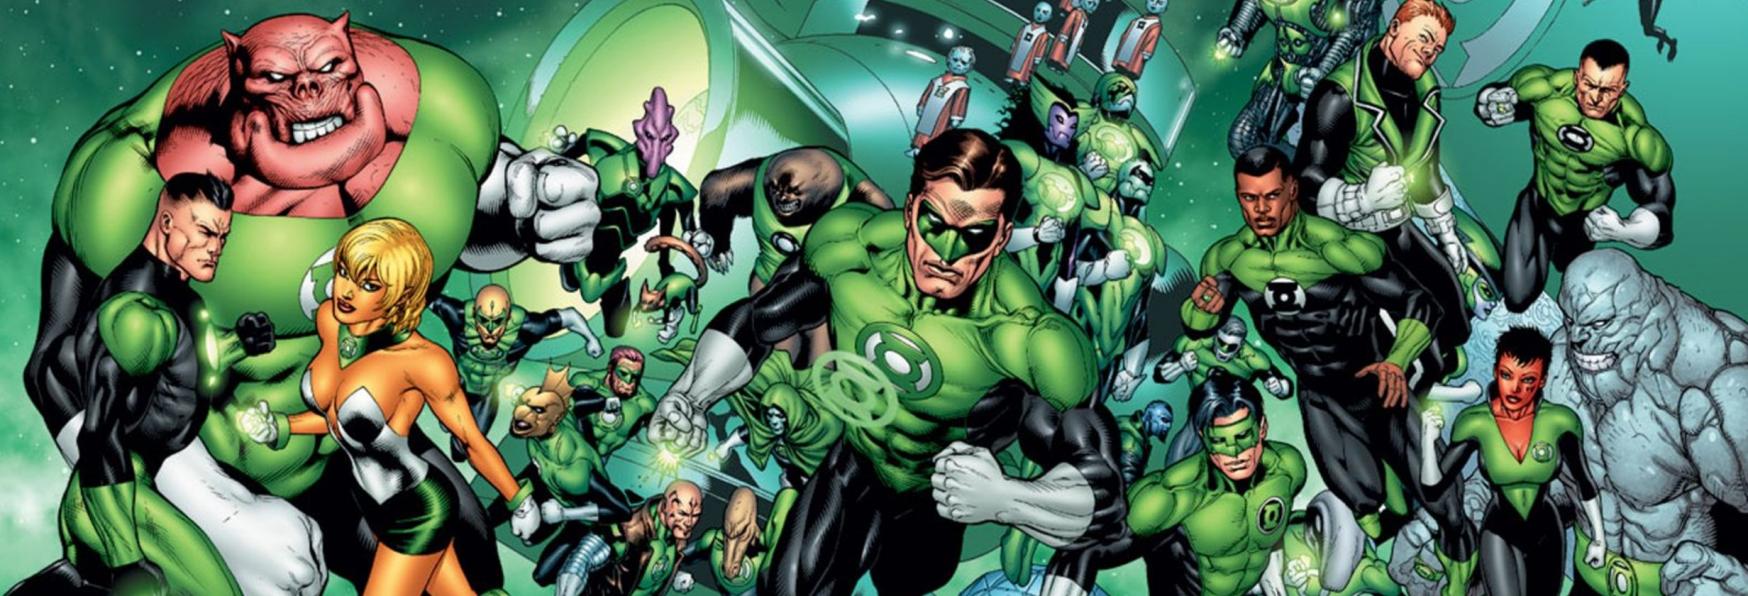 Green Lantern: ecco gli ultimi Dettagli sulla nuova Serie TV di HBO Max